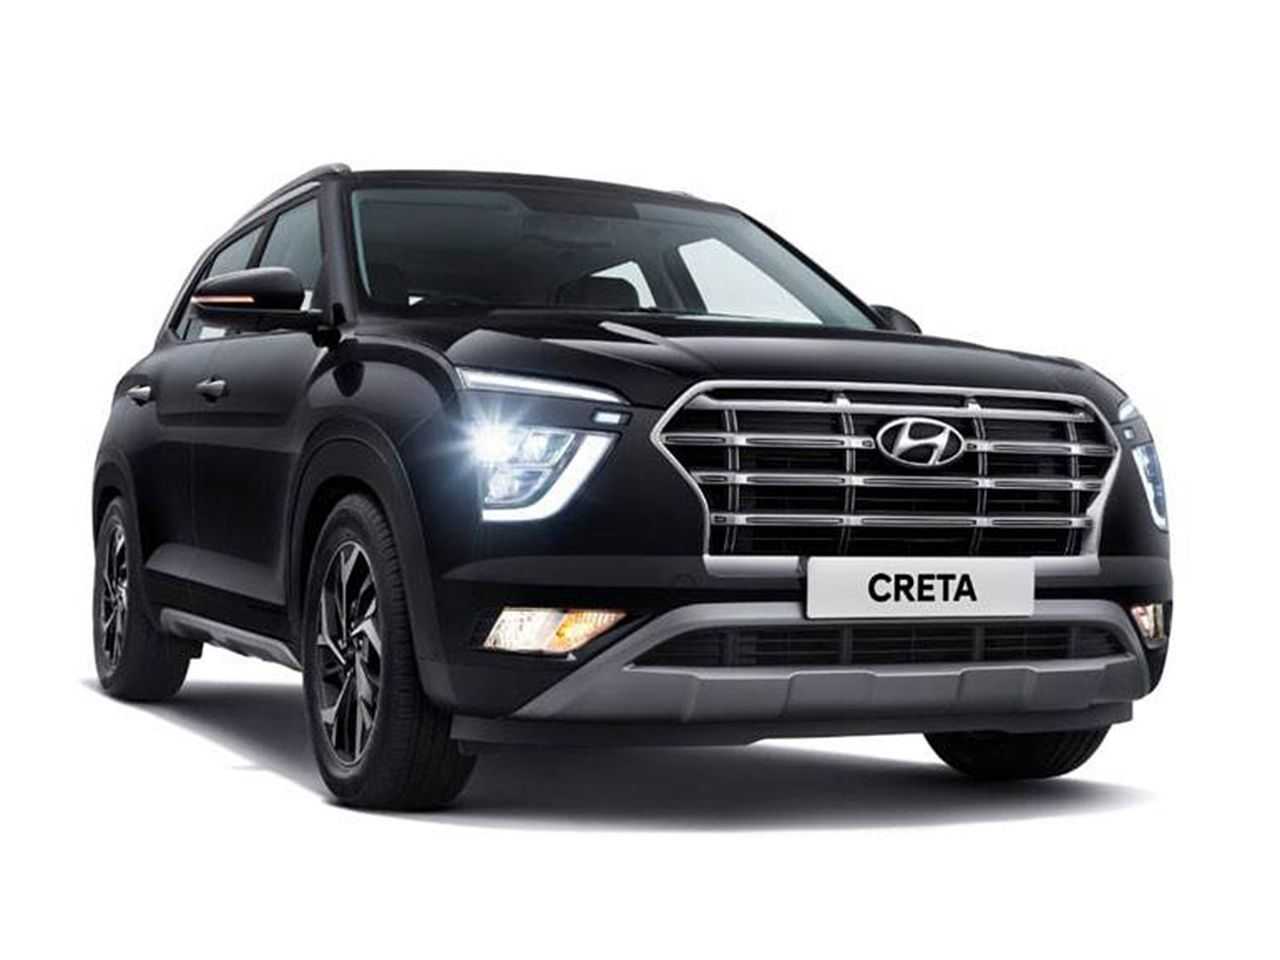 Segunda geração do Hyundai Creta revelada na Índia